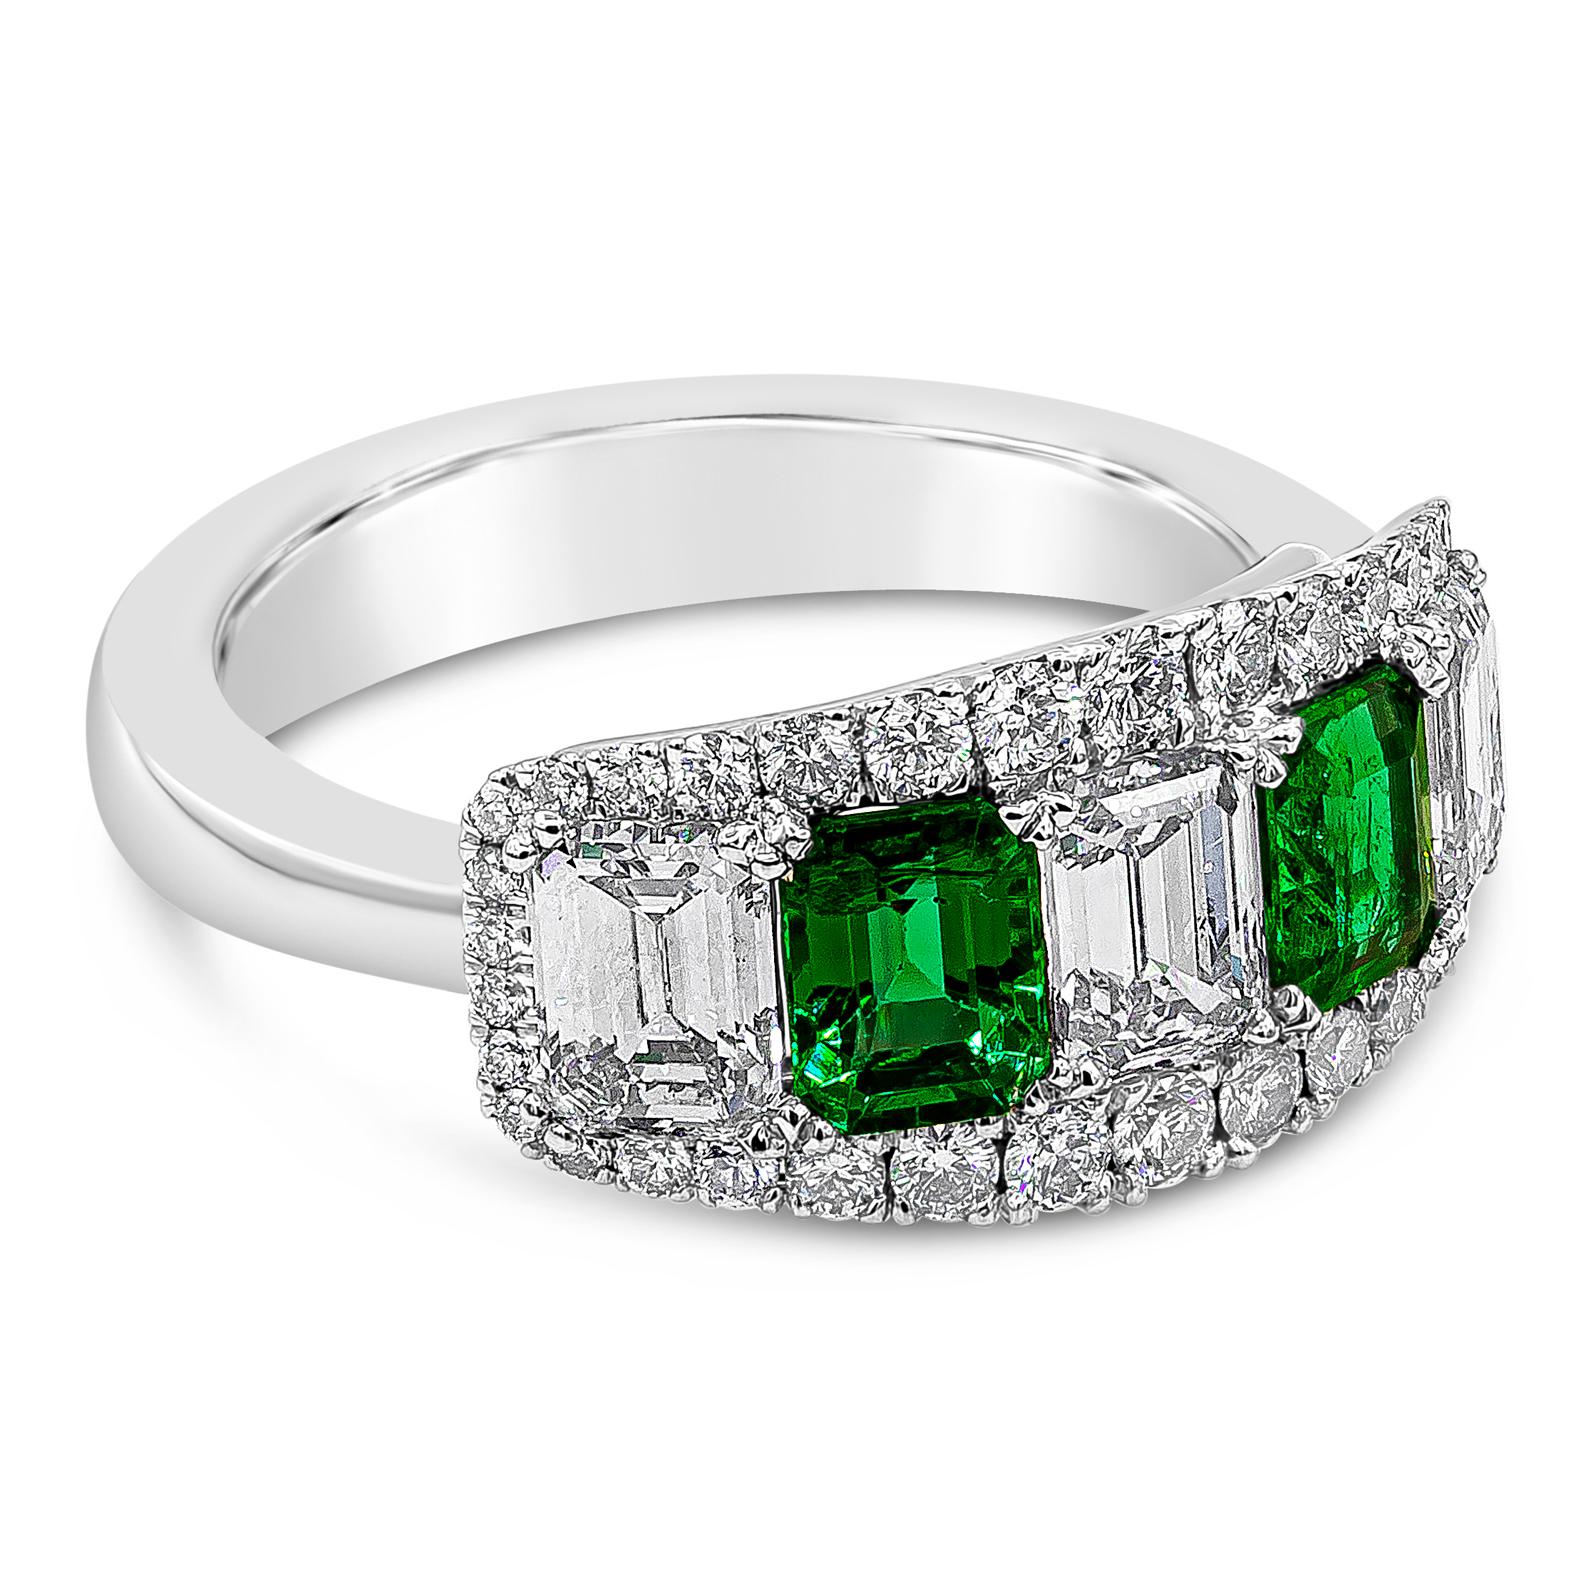 Une magnifique bague à cinq pierres présente une émeraude verte taillée en émeraude et des diamants alternant élégamment, terminés par une rangée de diamants ronds brillants. Les émeraudes vertes pèsent 0,85 carats, les diamants de taille émeraude